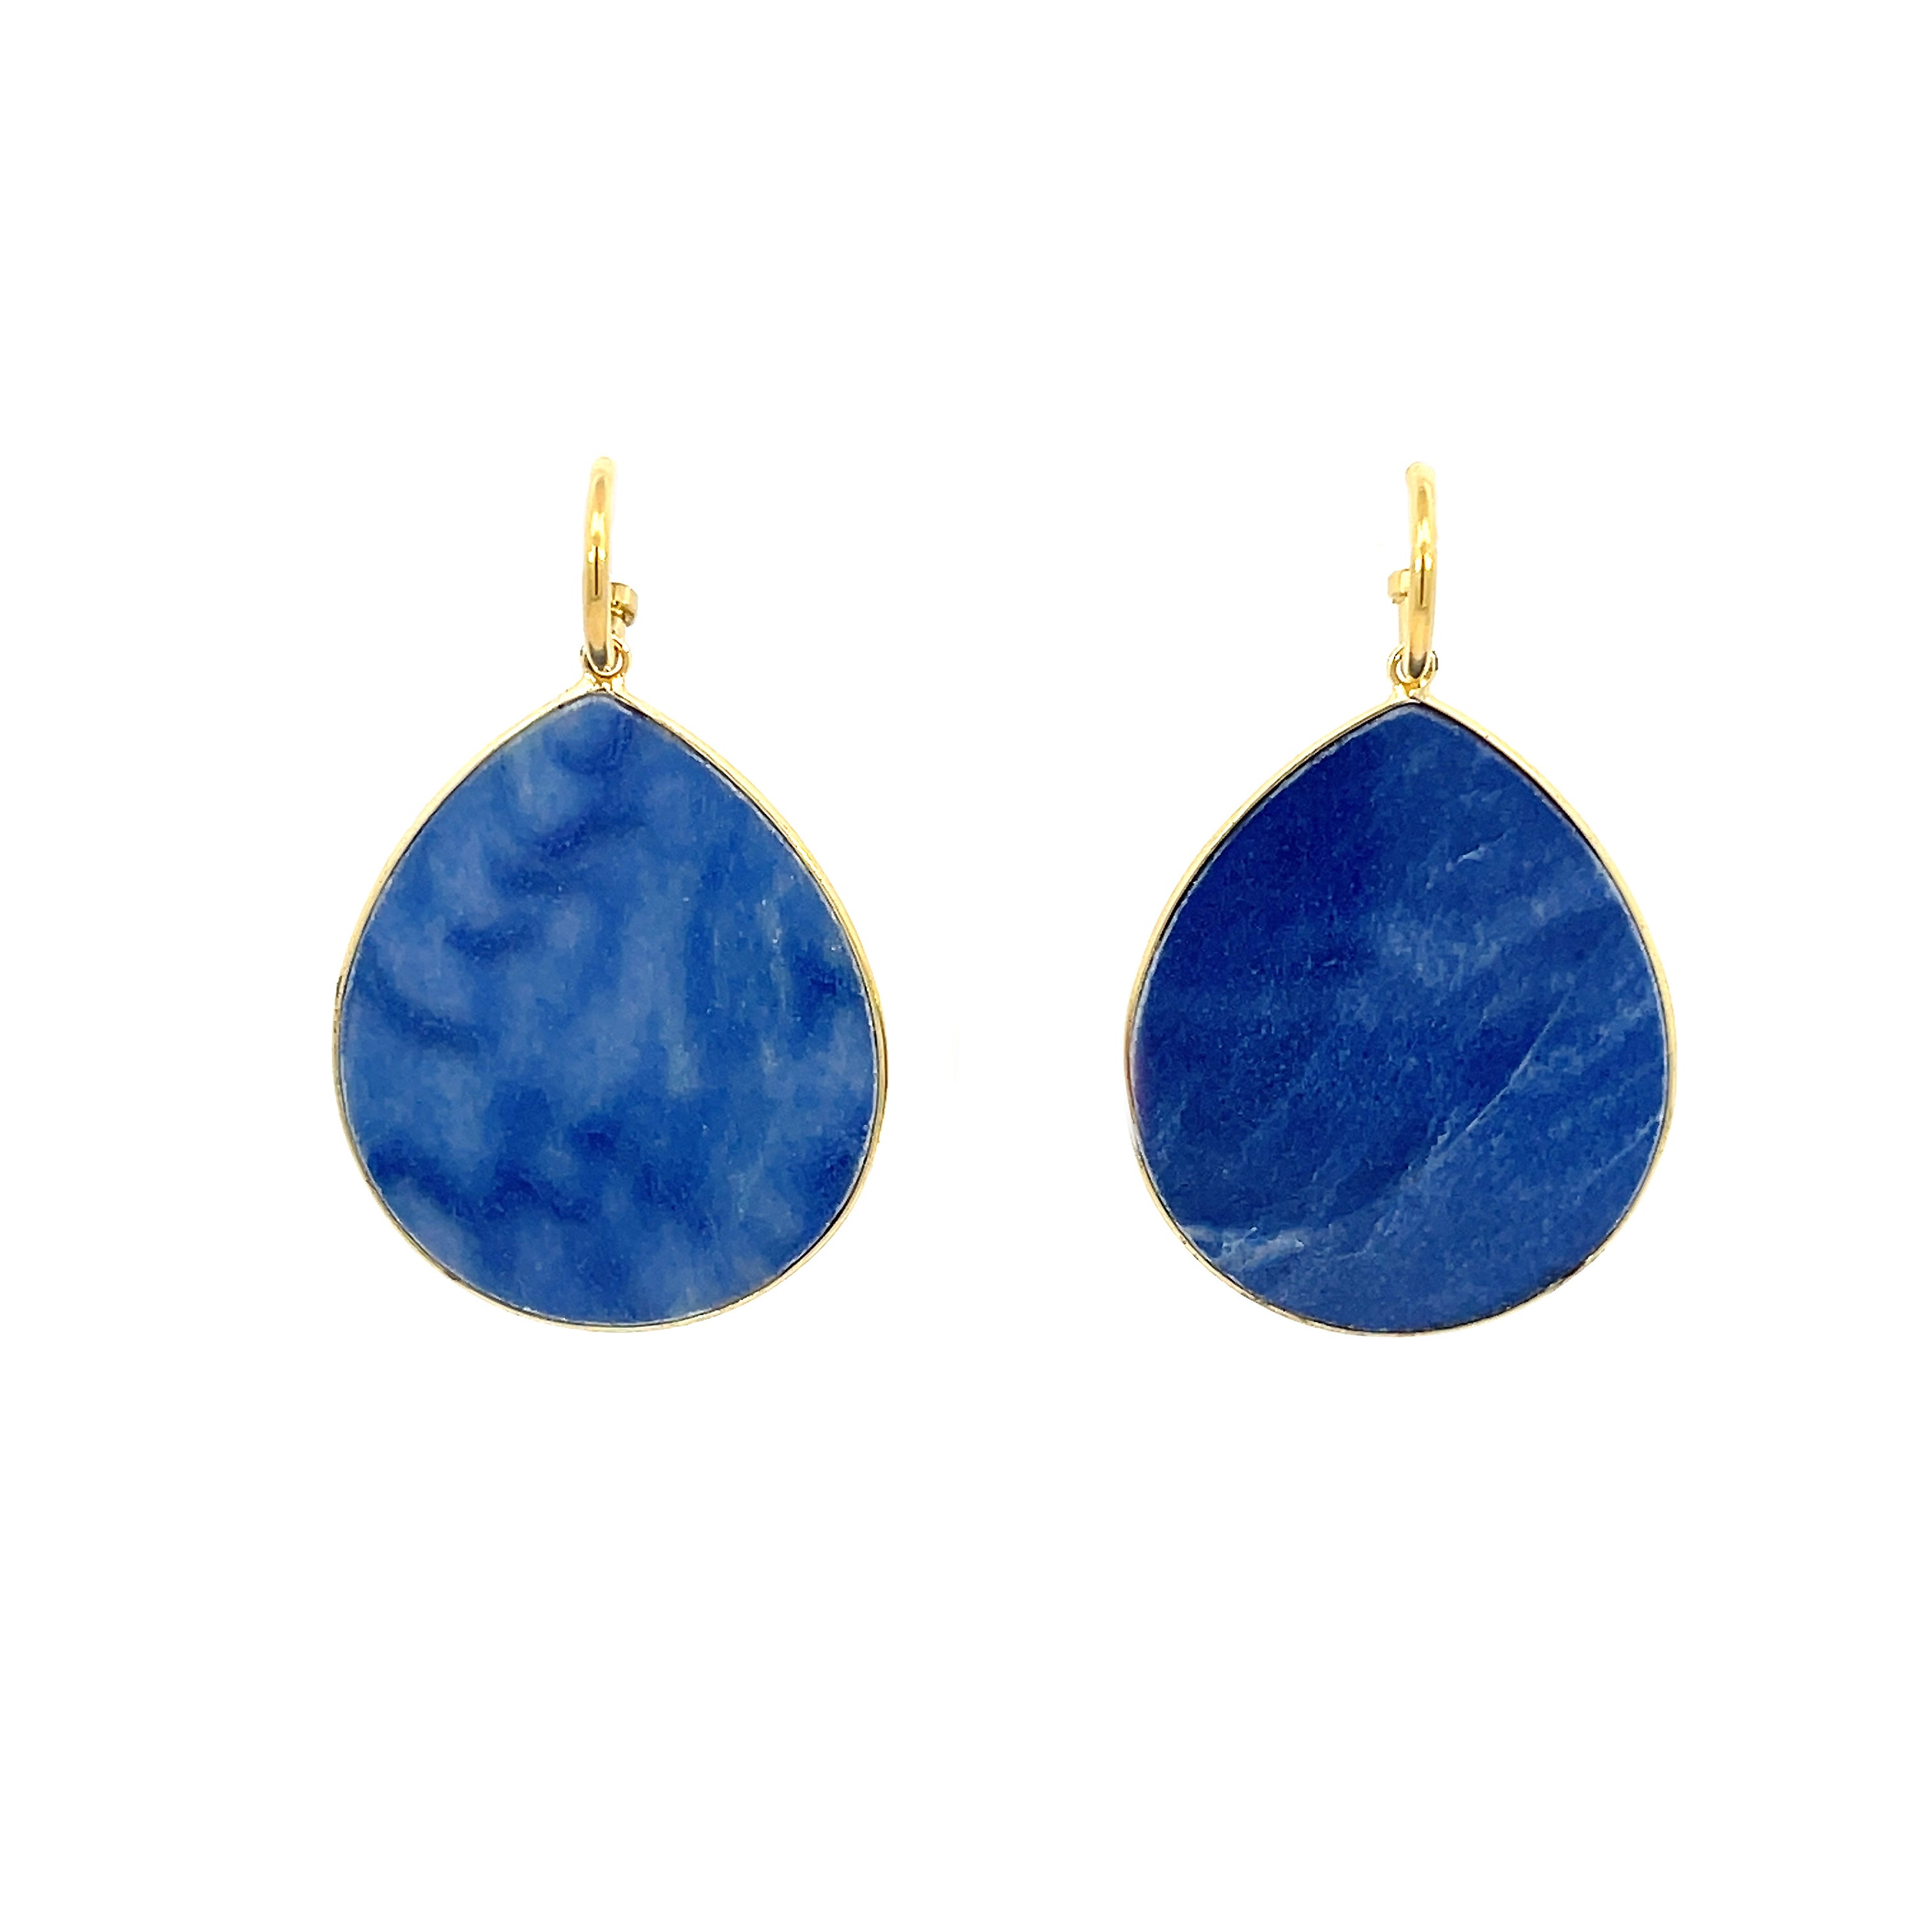 New Heavenly Beauty Oval Drop Earrings/Trust/Lapis Lazuli